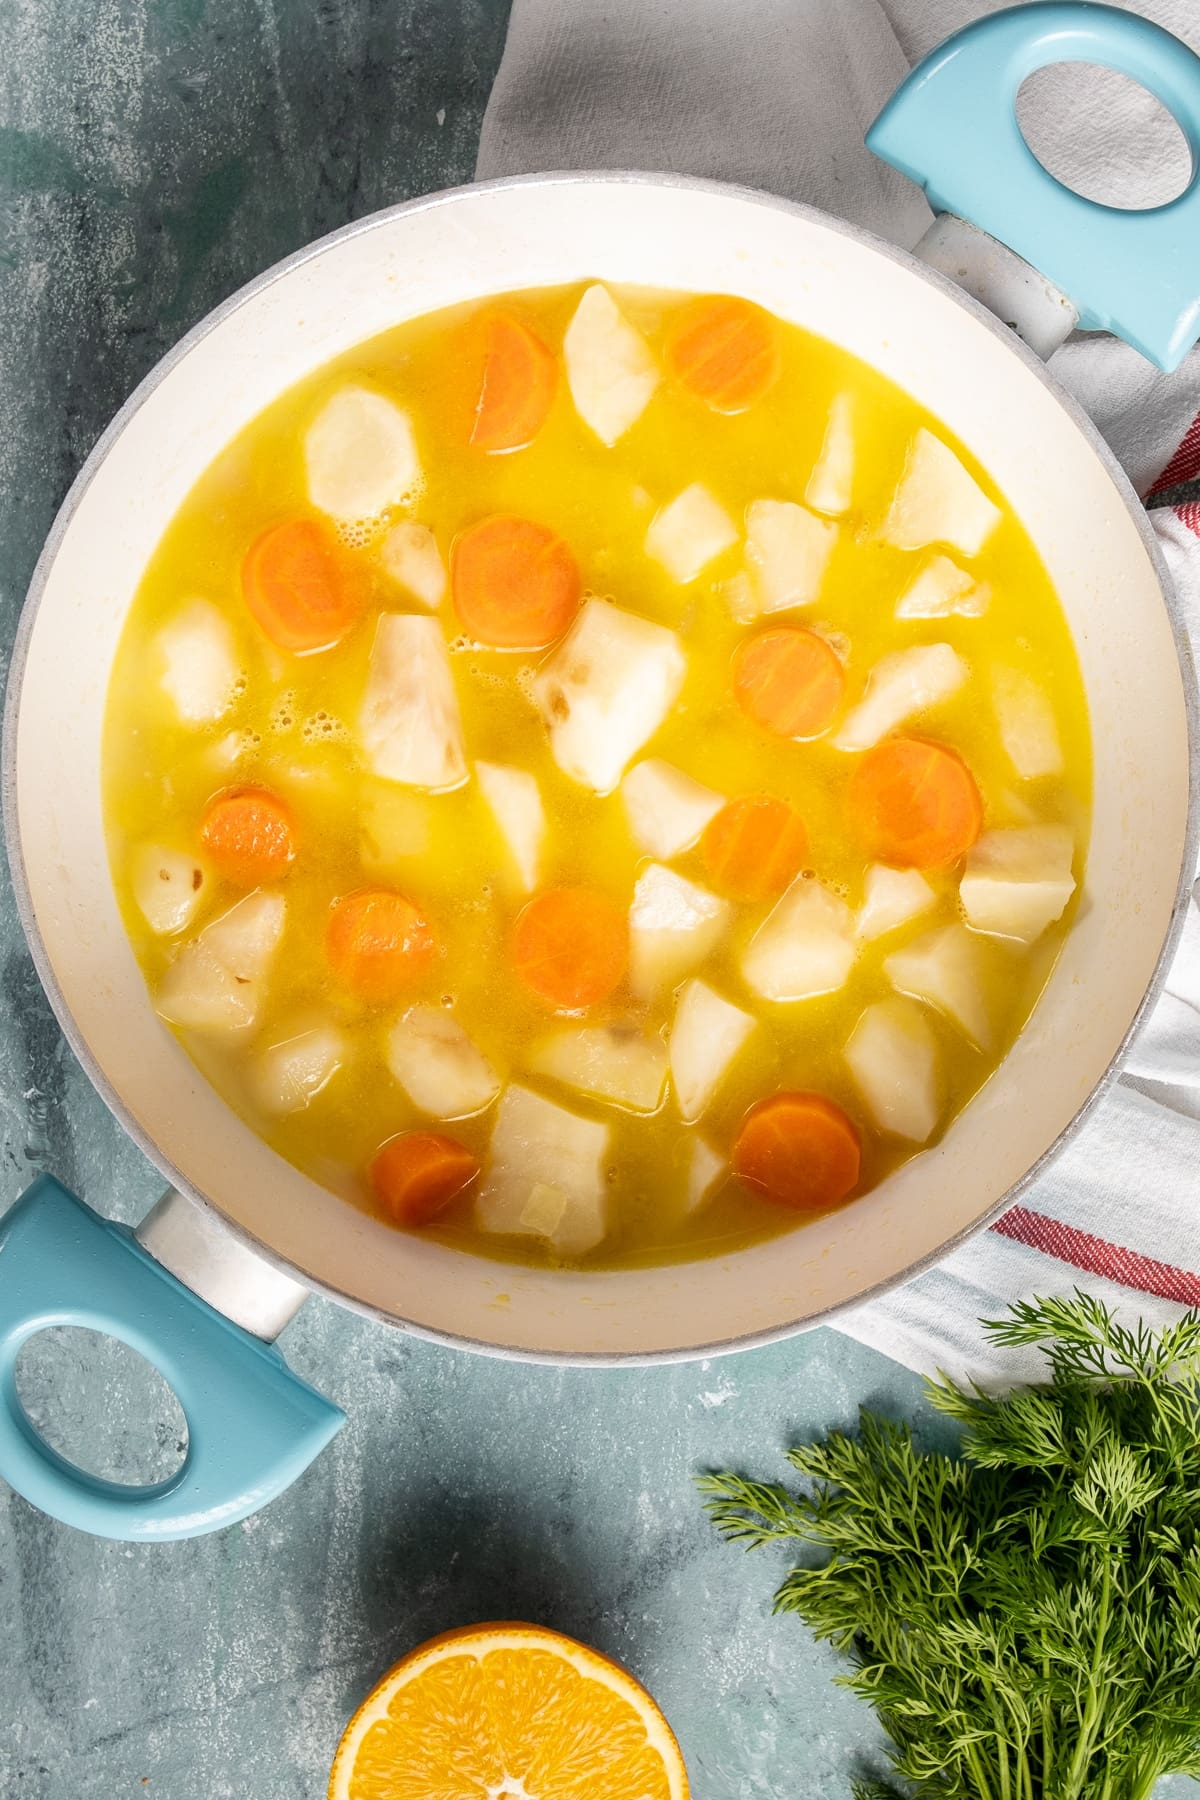 在白色的平底锅里放入切好的太阳蓟和胡萝卜，加入橙汁和柠檬汁。